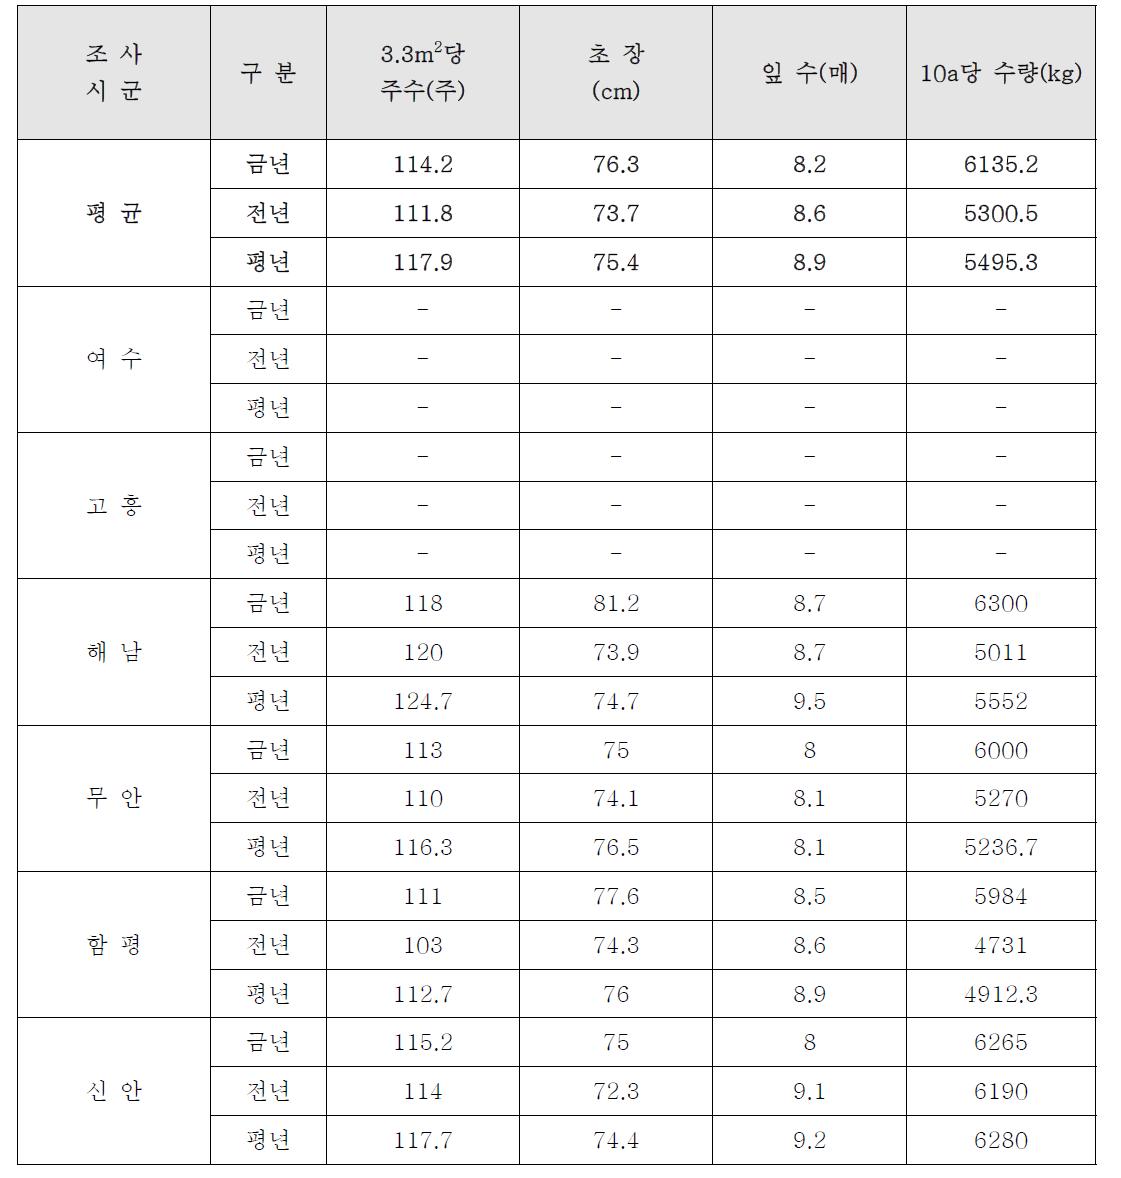 양파 생육상황 조사 결과 (6회차 : 2014. 5. 16.)